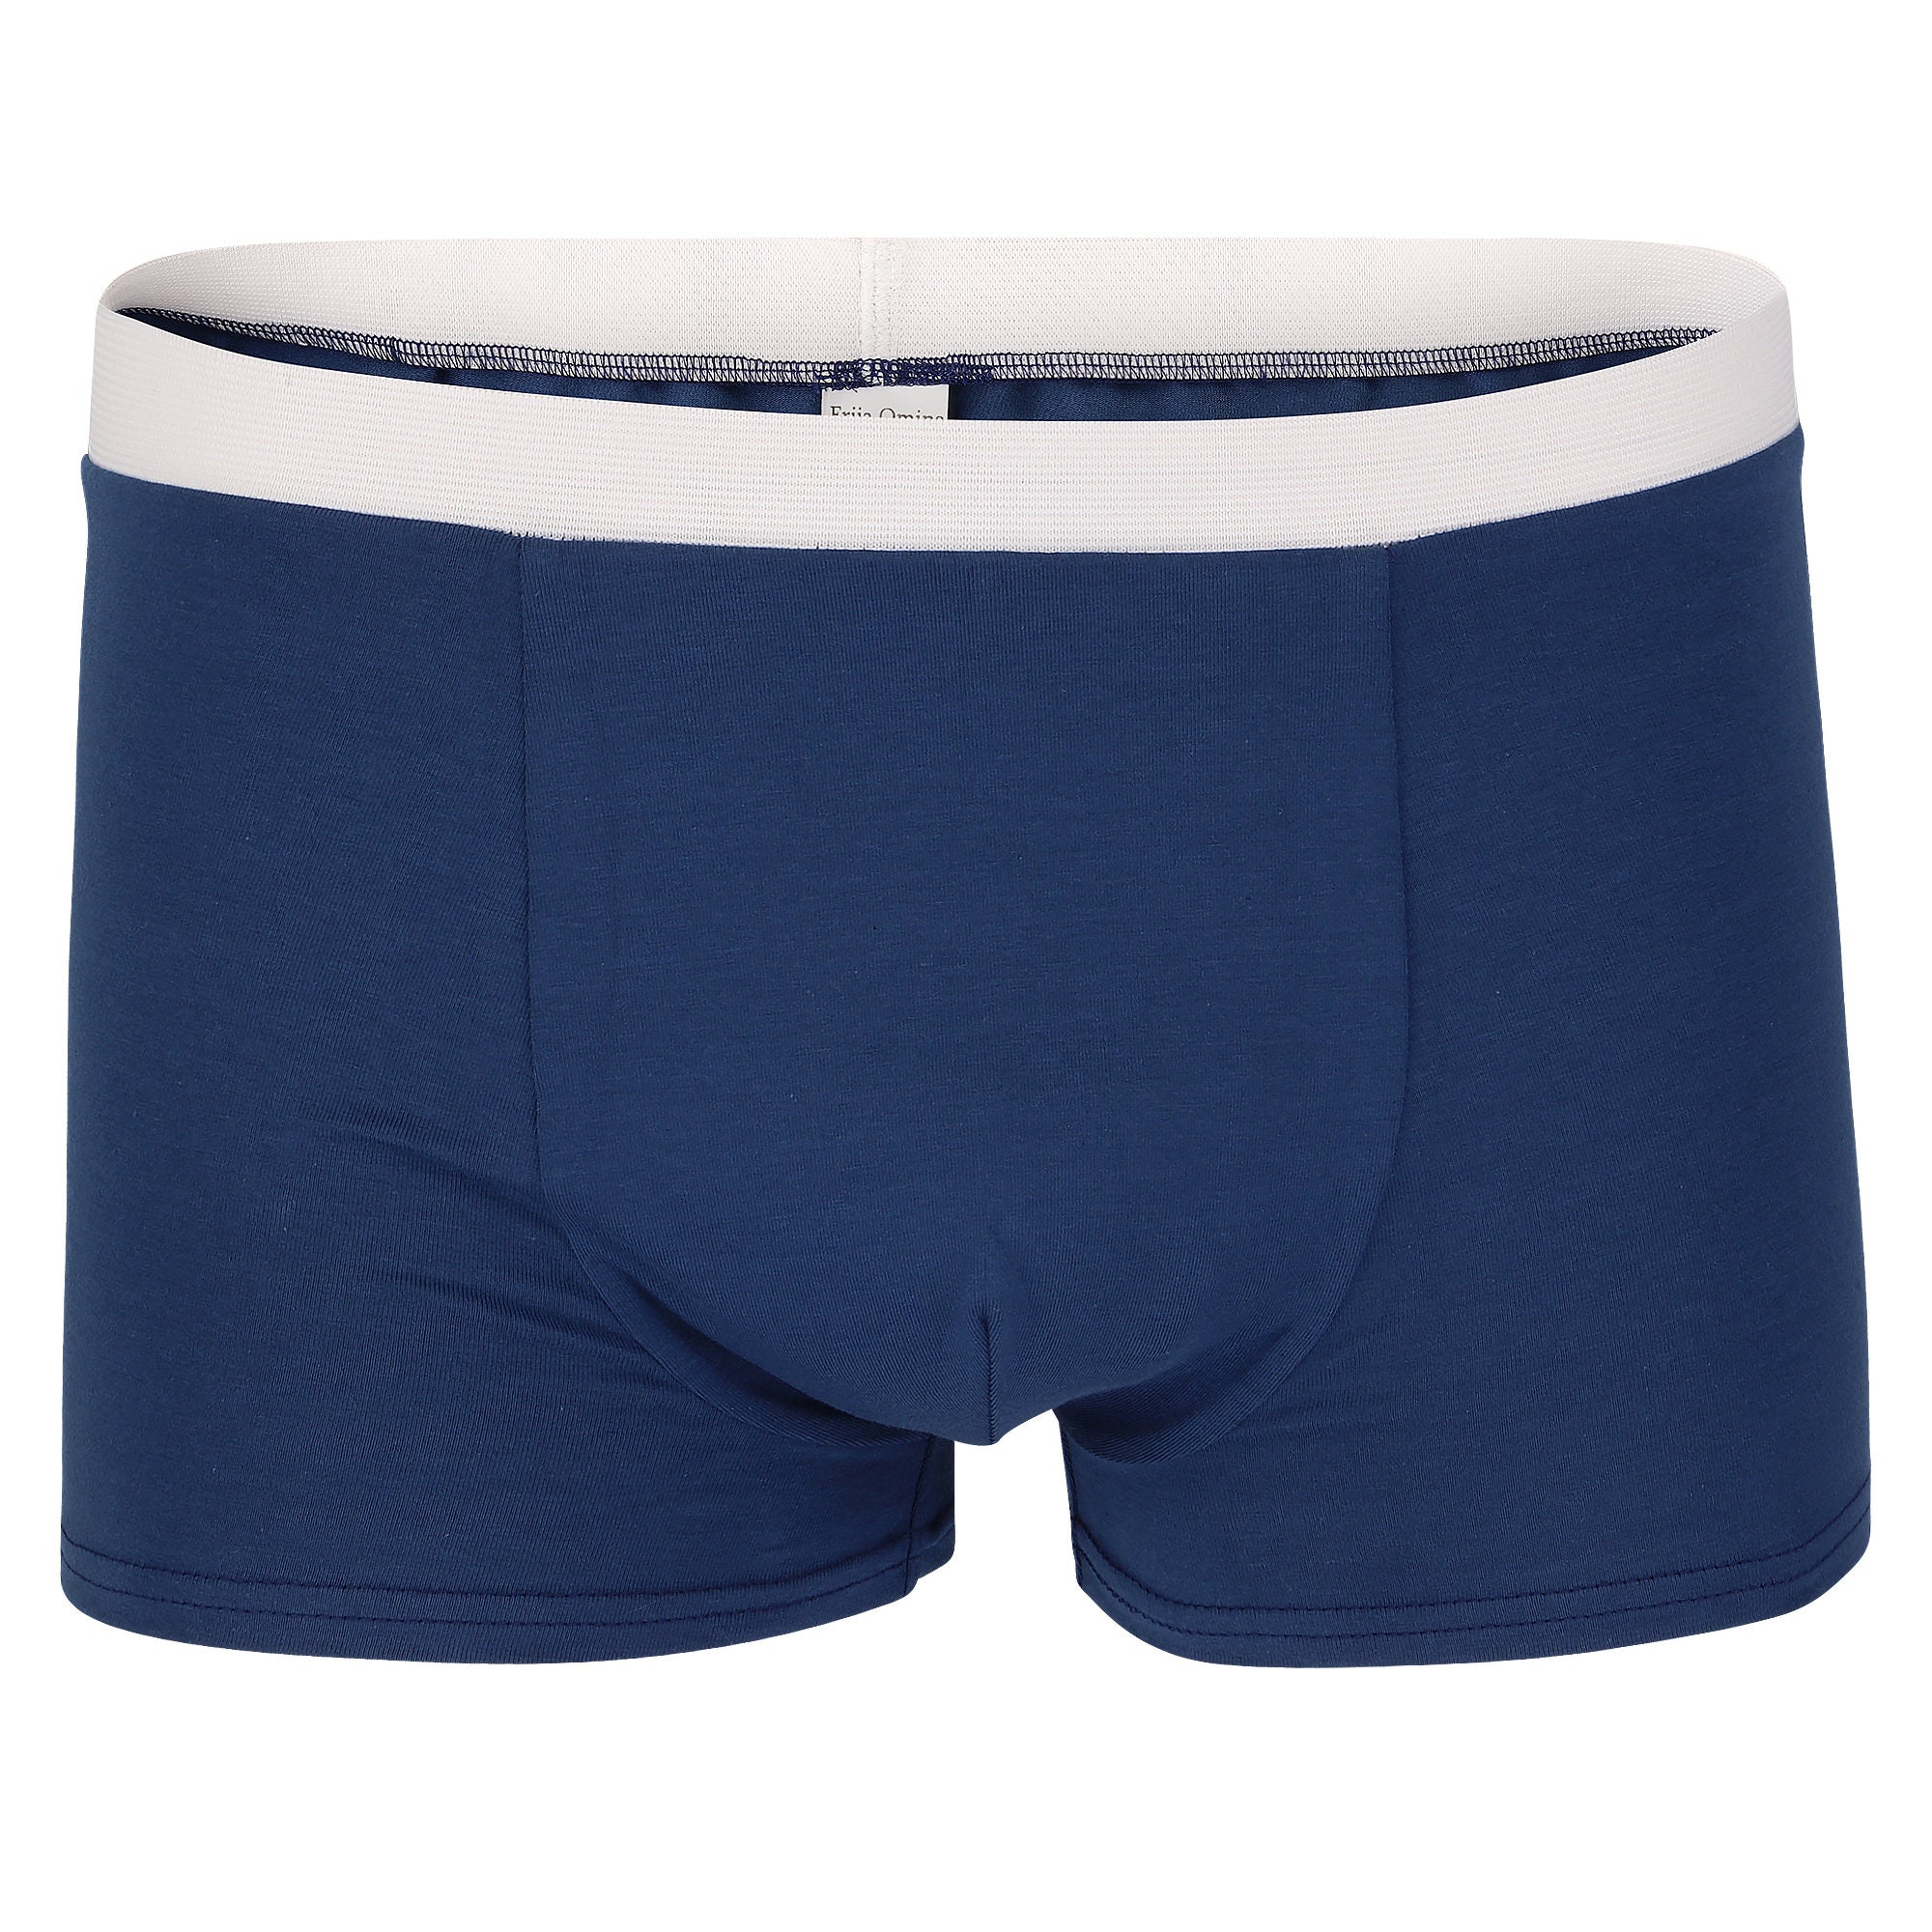 Kleding Jongenskleding Ondergoed Boys Organic Cotton & Fair Trade Blue Stripes Boxer Brief 3-pack 